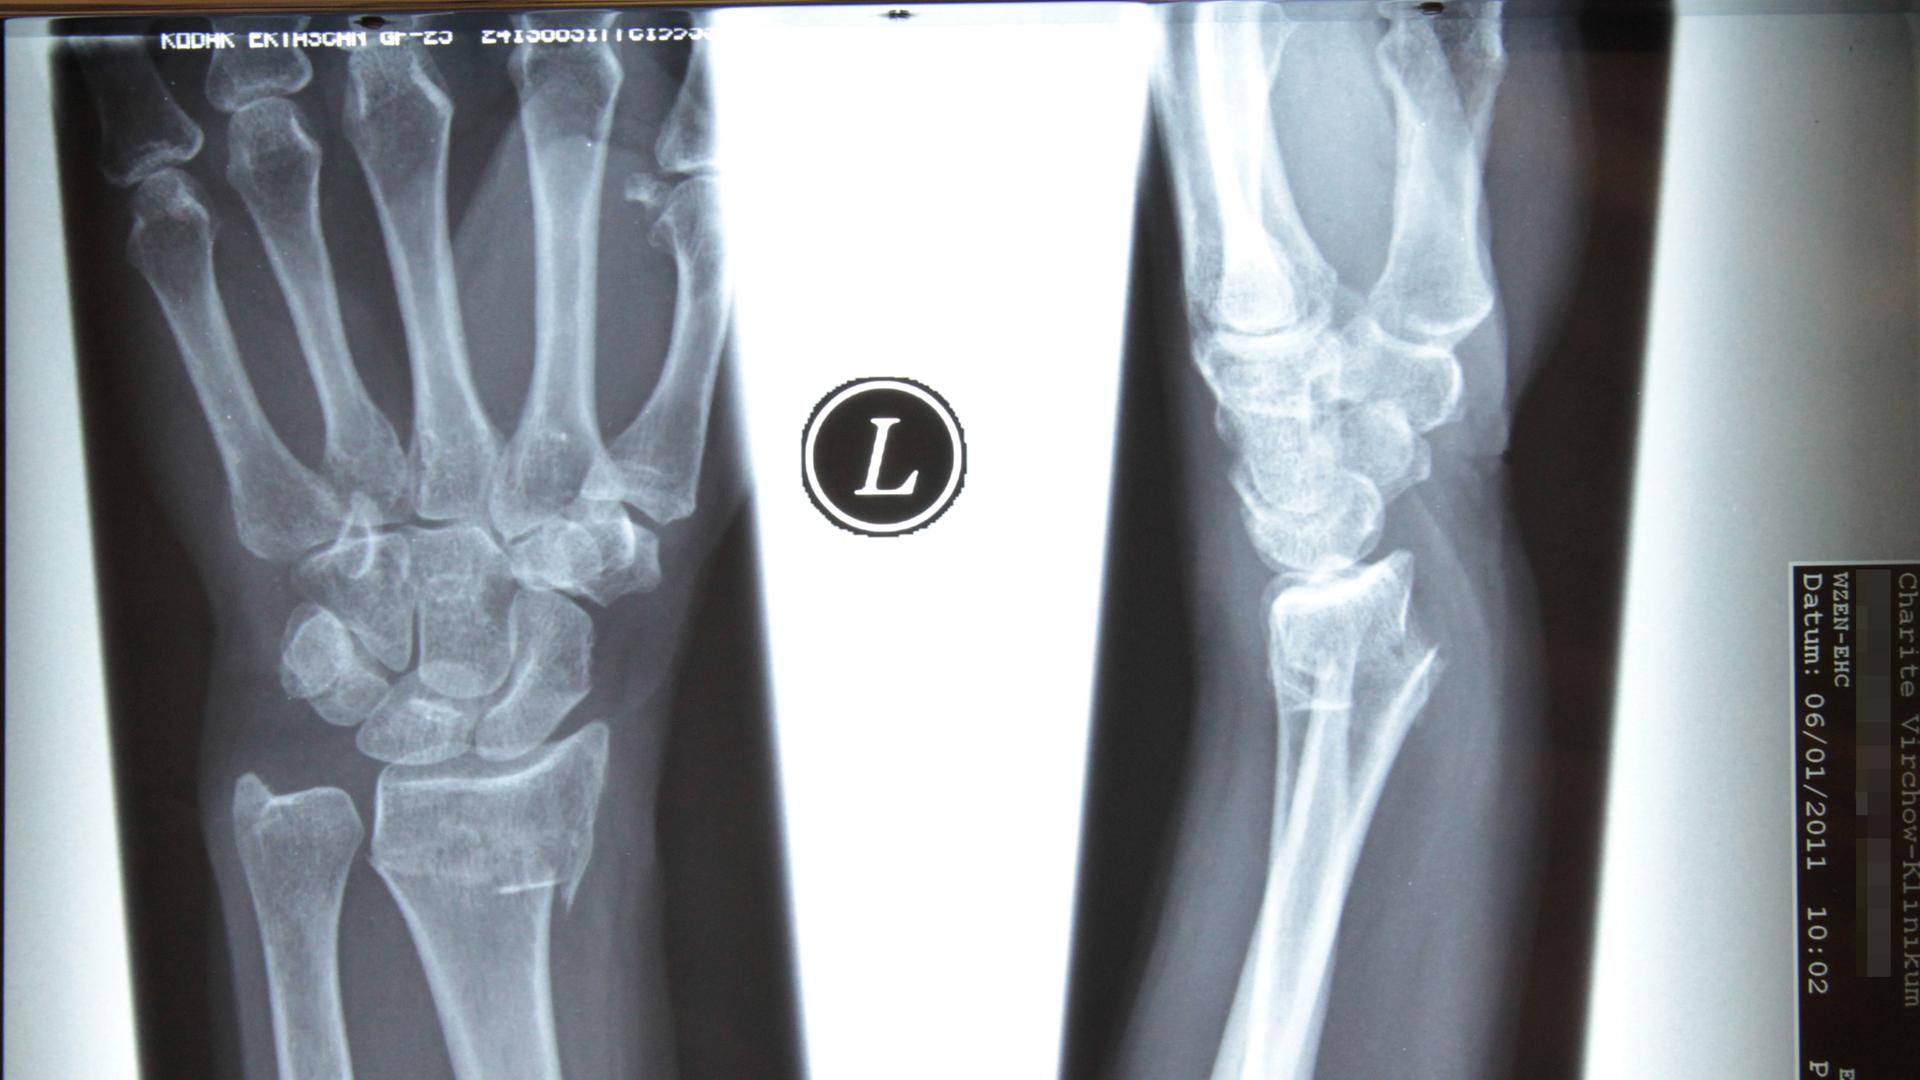 Das Bild zeigt in einer Röntgenaufnahme die Knochen einer Hand